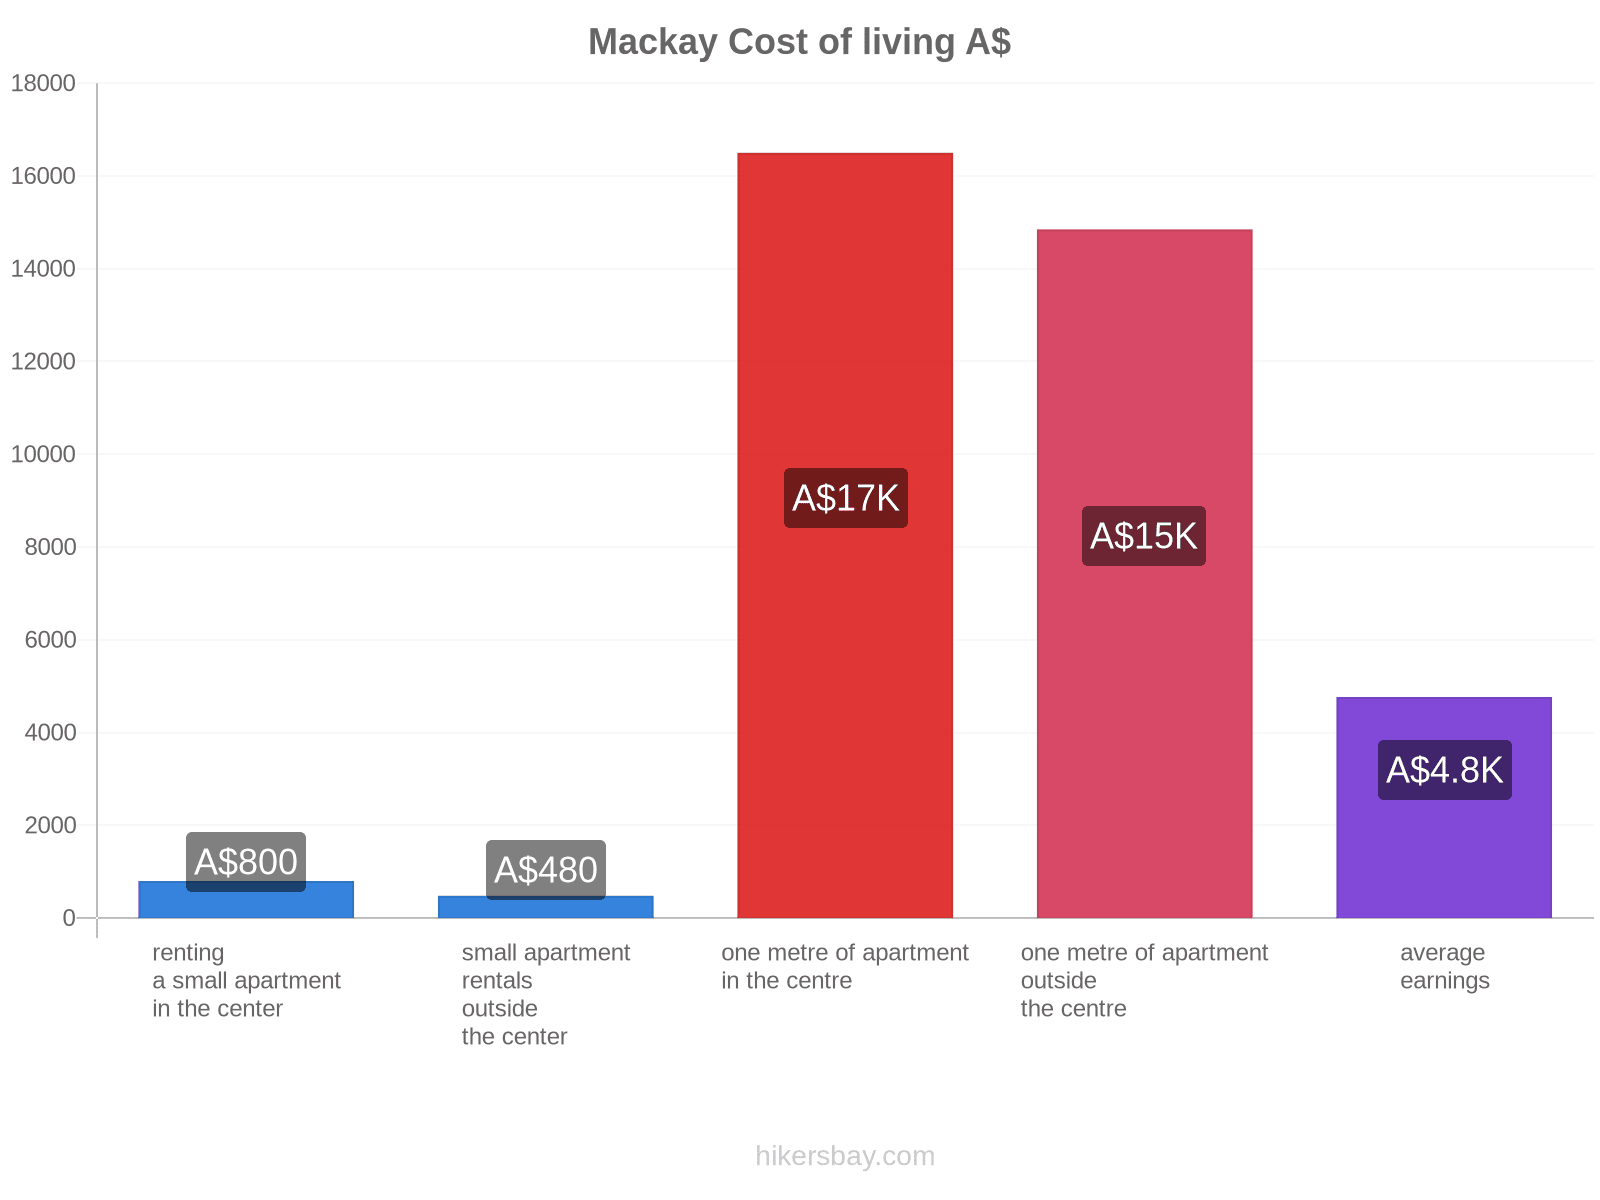 Mackay cost of living hikersbay.com